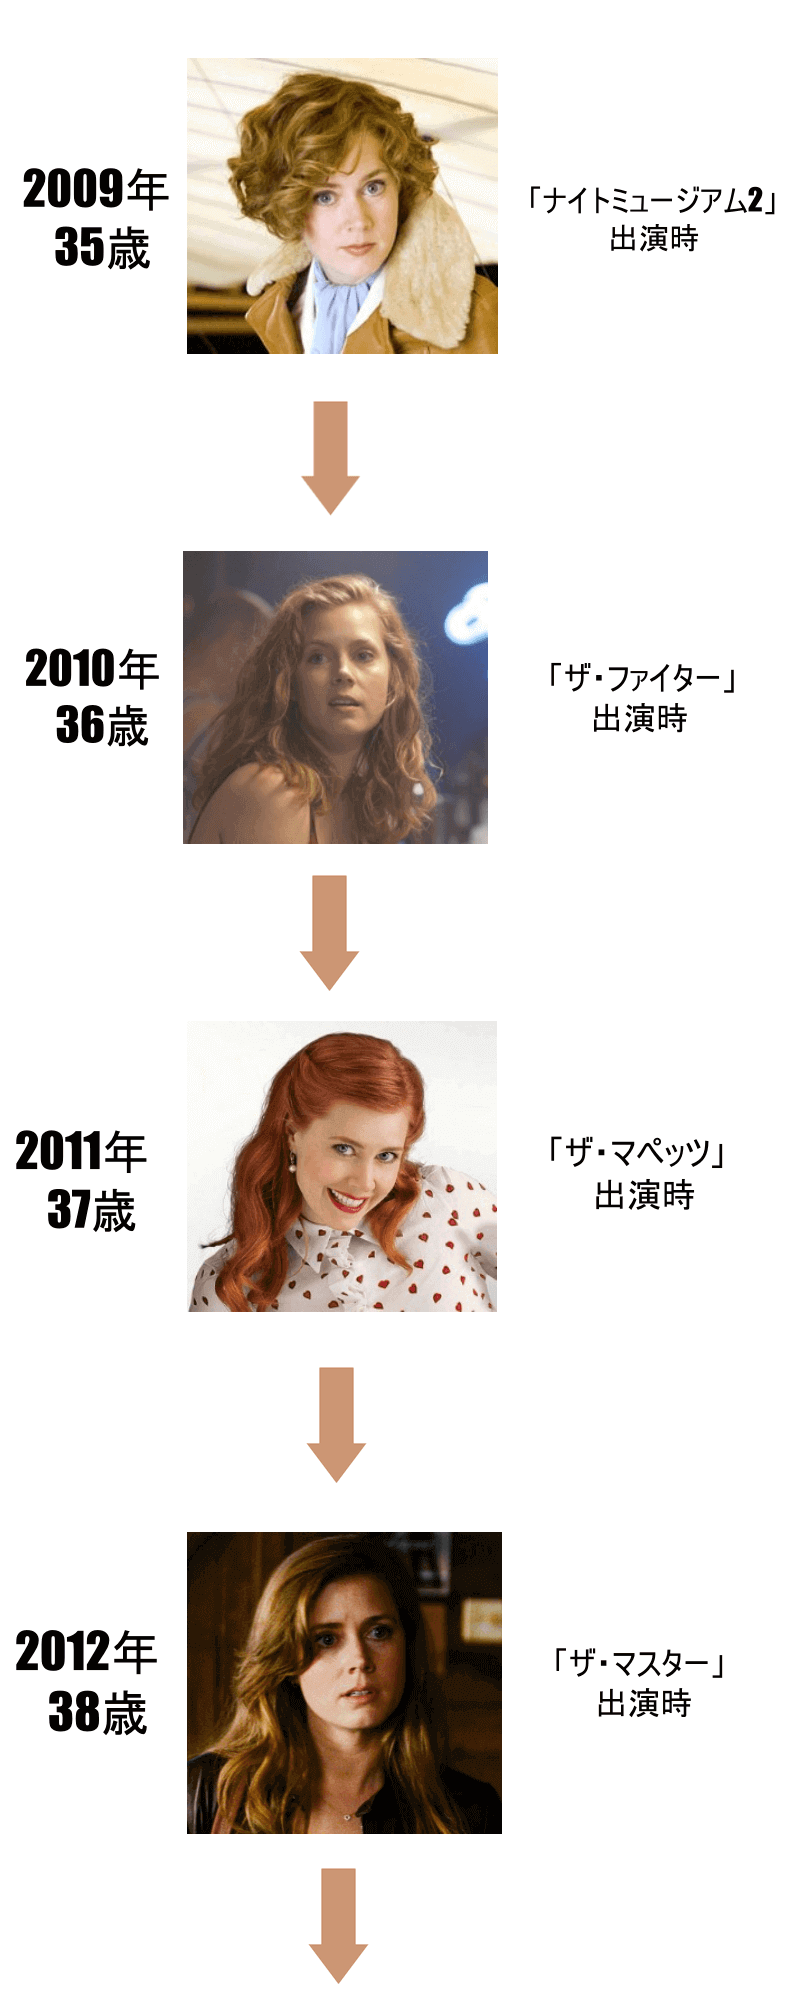 エイミーアダムスの画像年表2009年から2012年まで